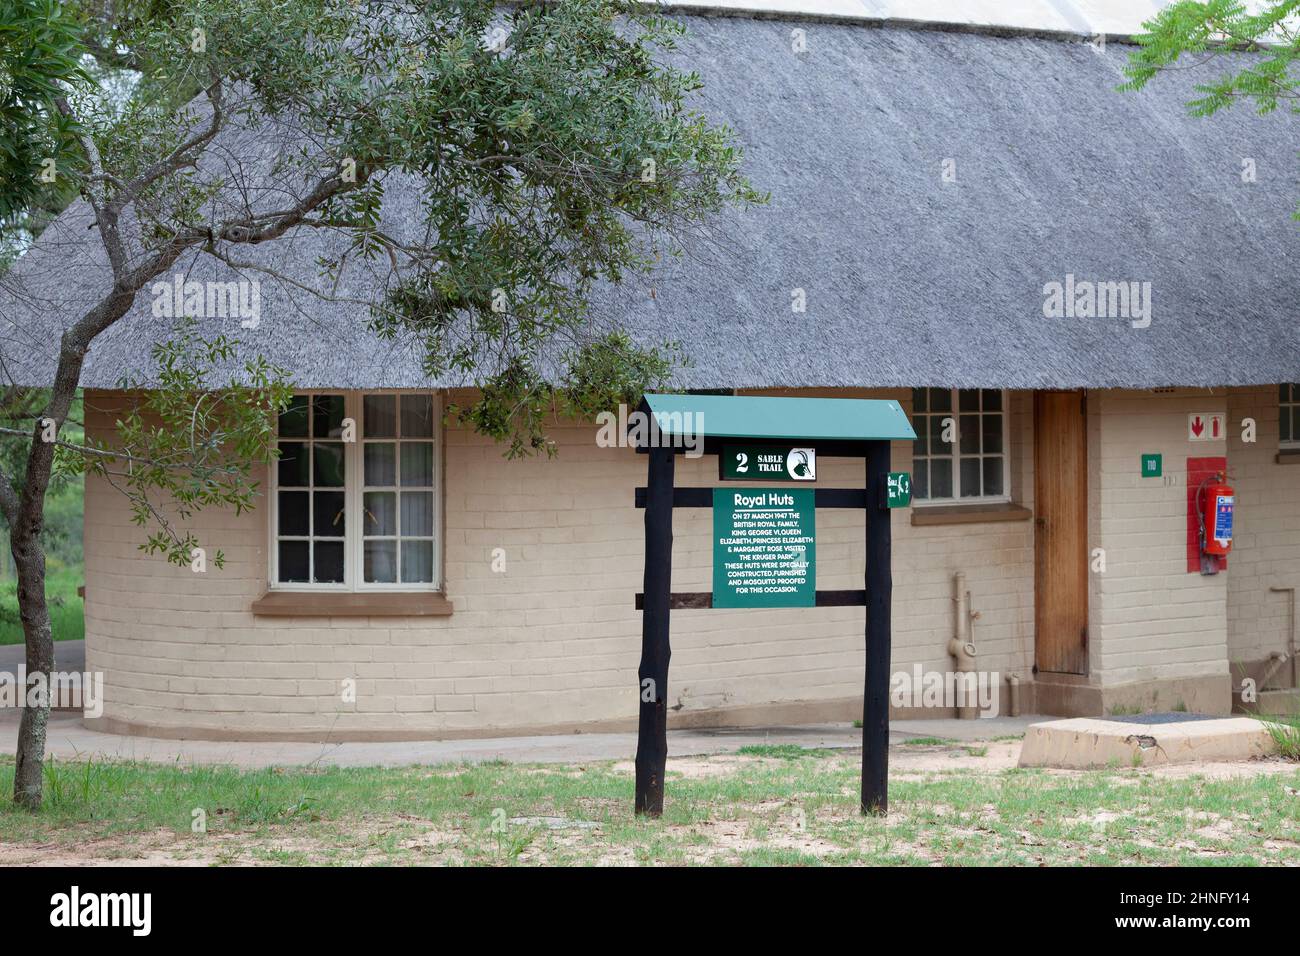 Letrero fuera de una cabaña de alojamiento en el campamento de descanso Pretoriuskop en el Parque Nacional Kruger indicando que este es un Royal Hut que fue especialmente construido, pelaje Foto de stock